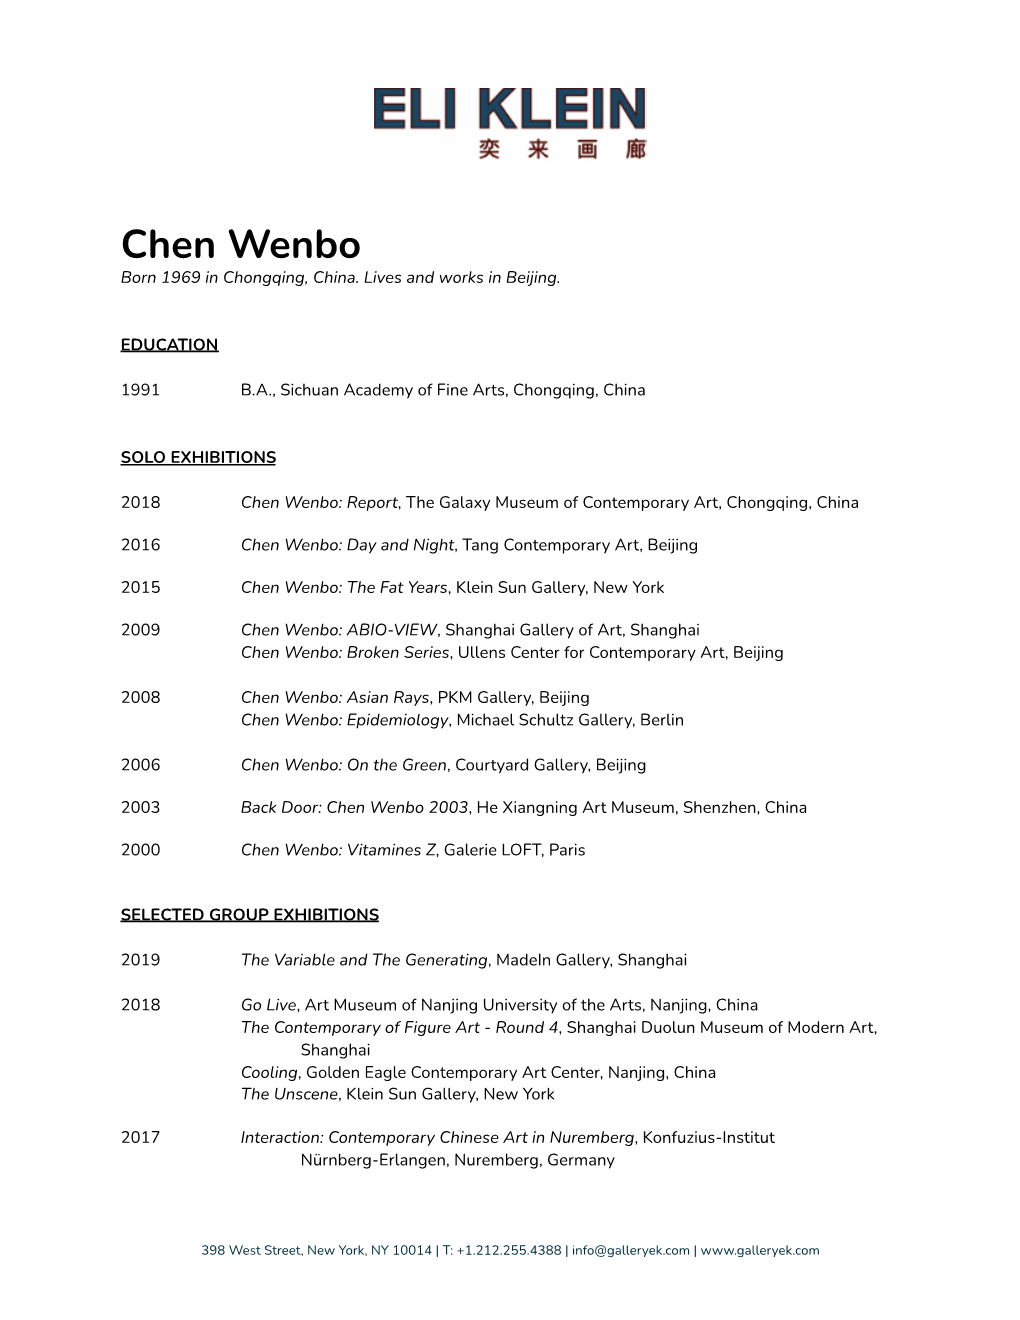 Chen Wenbo Born 1969 in Chongqing, China